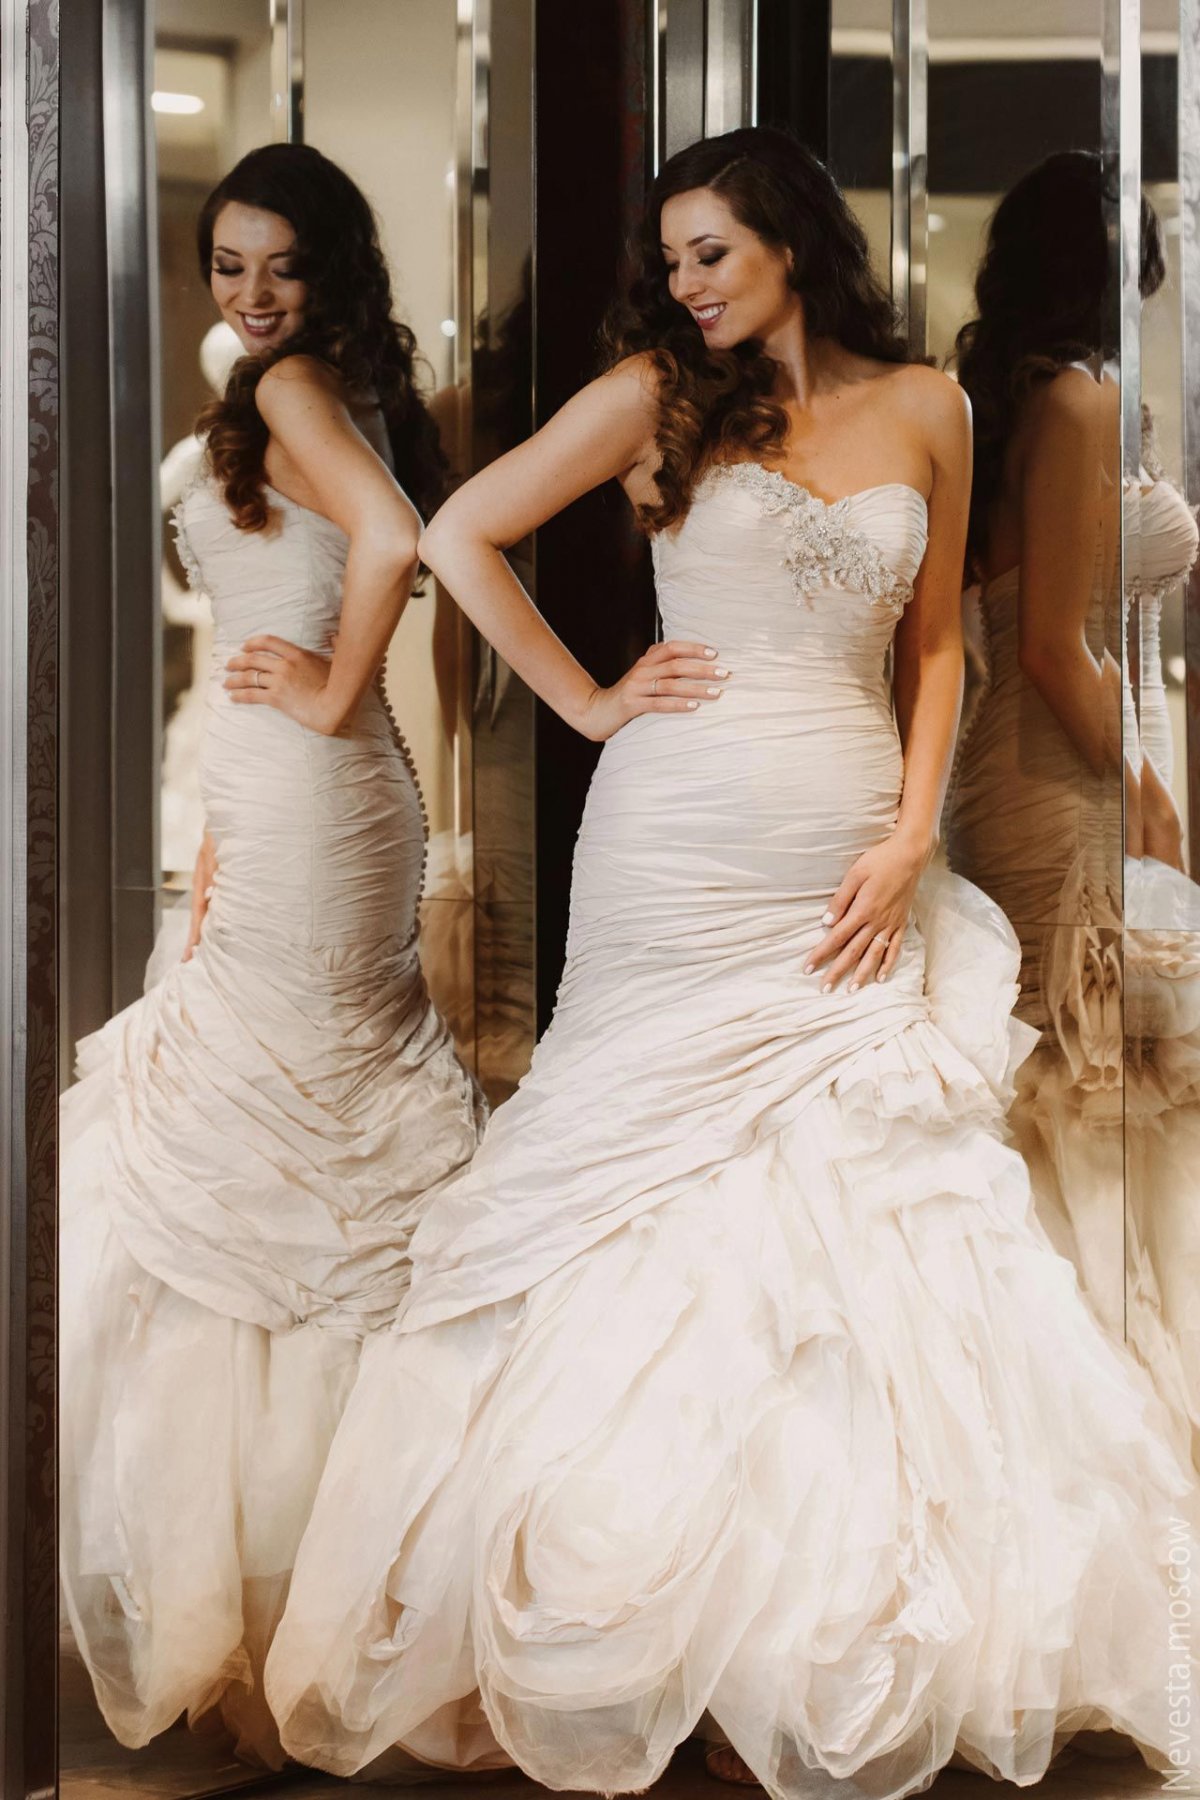 Рената Байкова примеряет свадебное платье фото 13